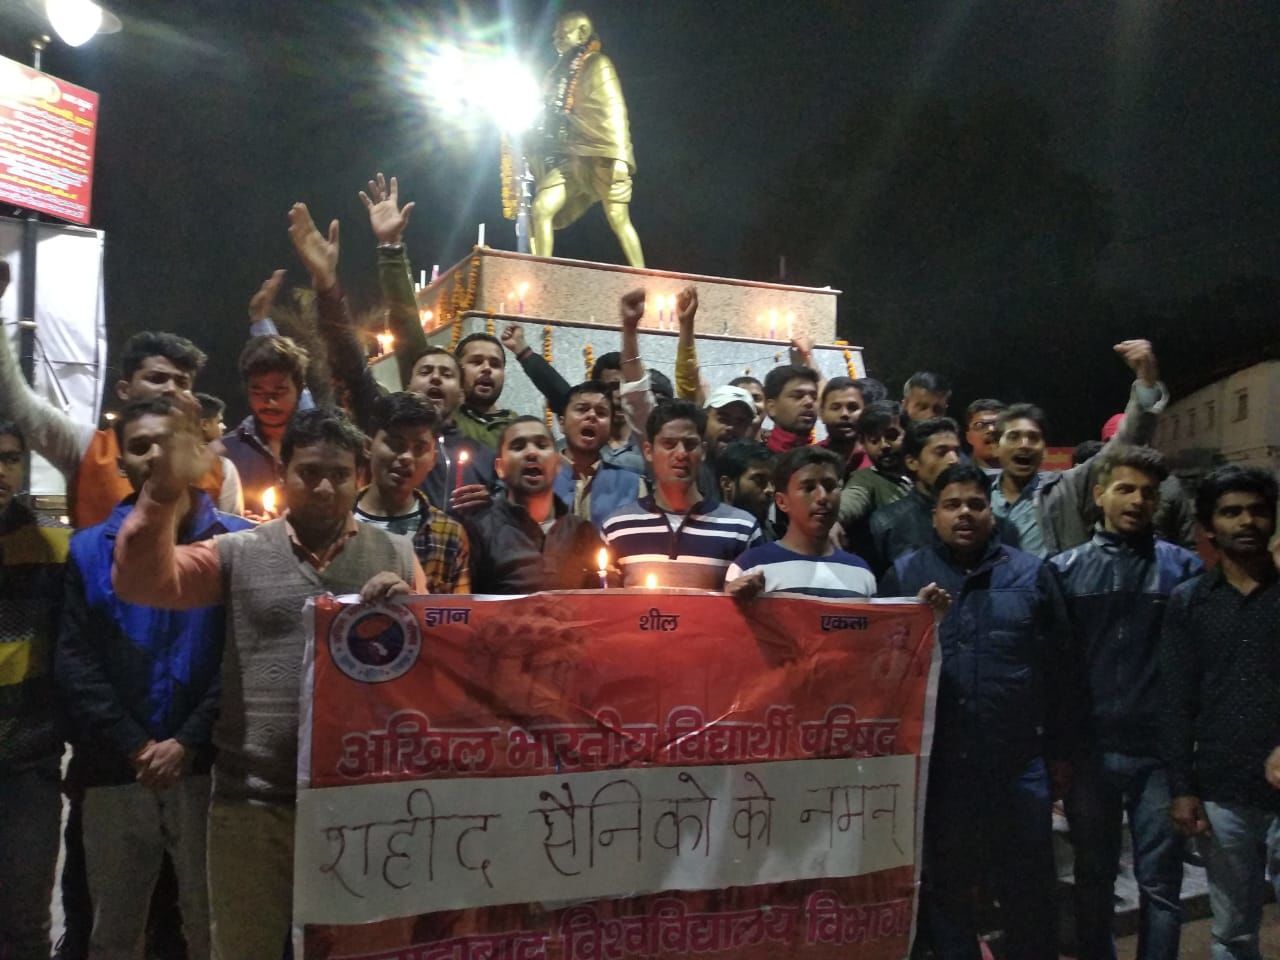 अखिल भारतीय विद्यार्थी परिषद ने कैंडल मार्च निकाल कर दी शहीदों को श्रद्धांजलि ,पाकिस्तान पर कार्यवाही की मांग की